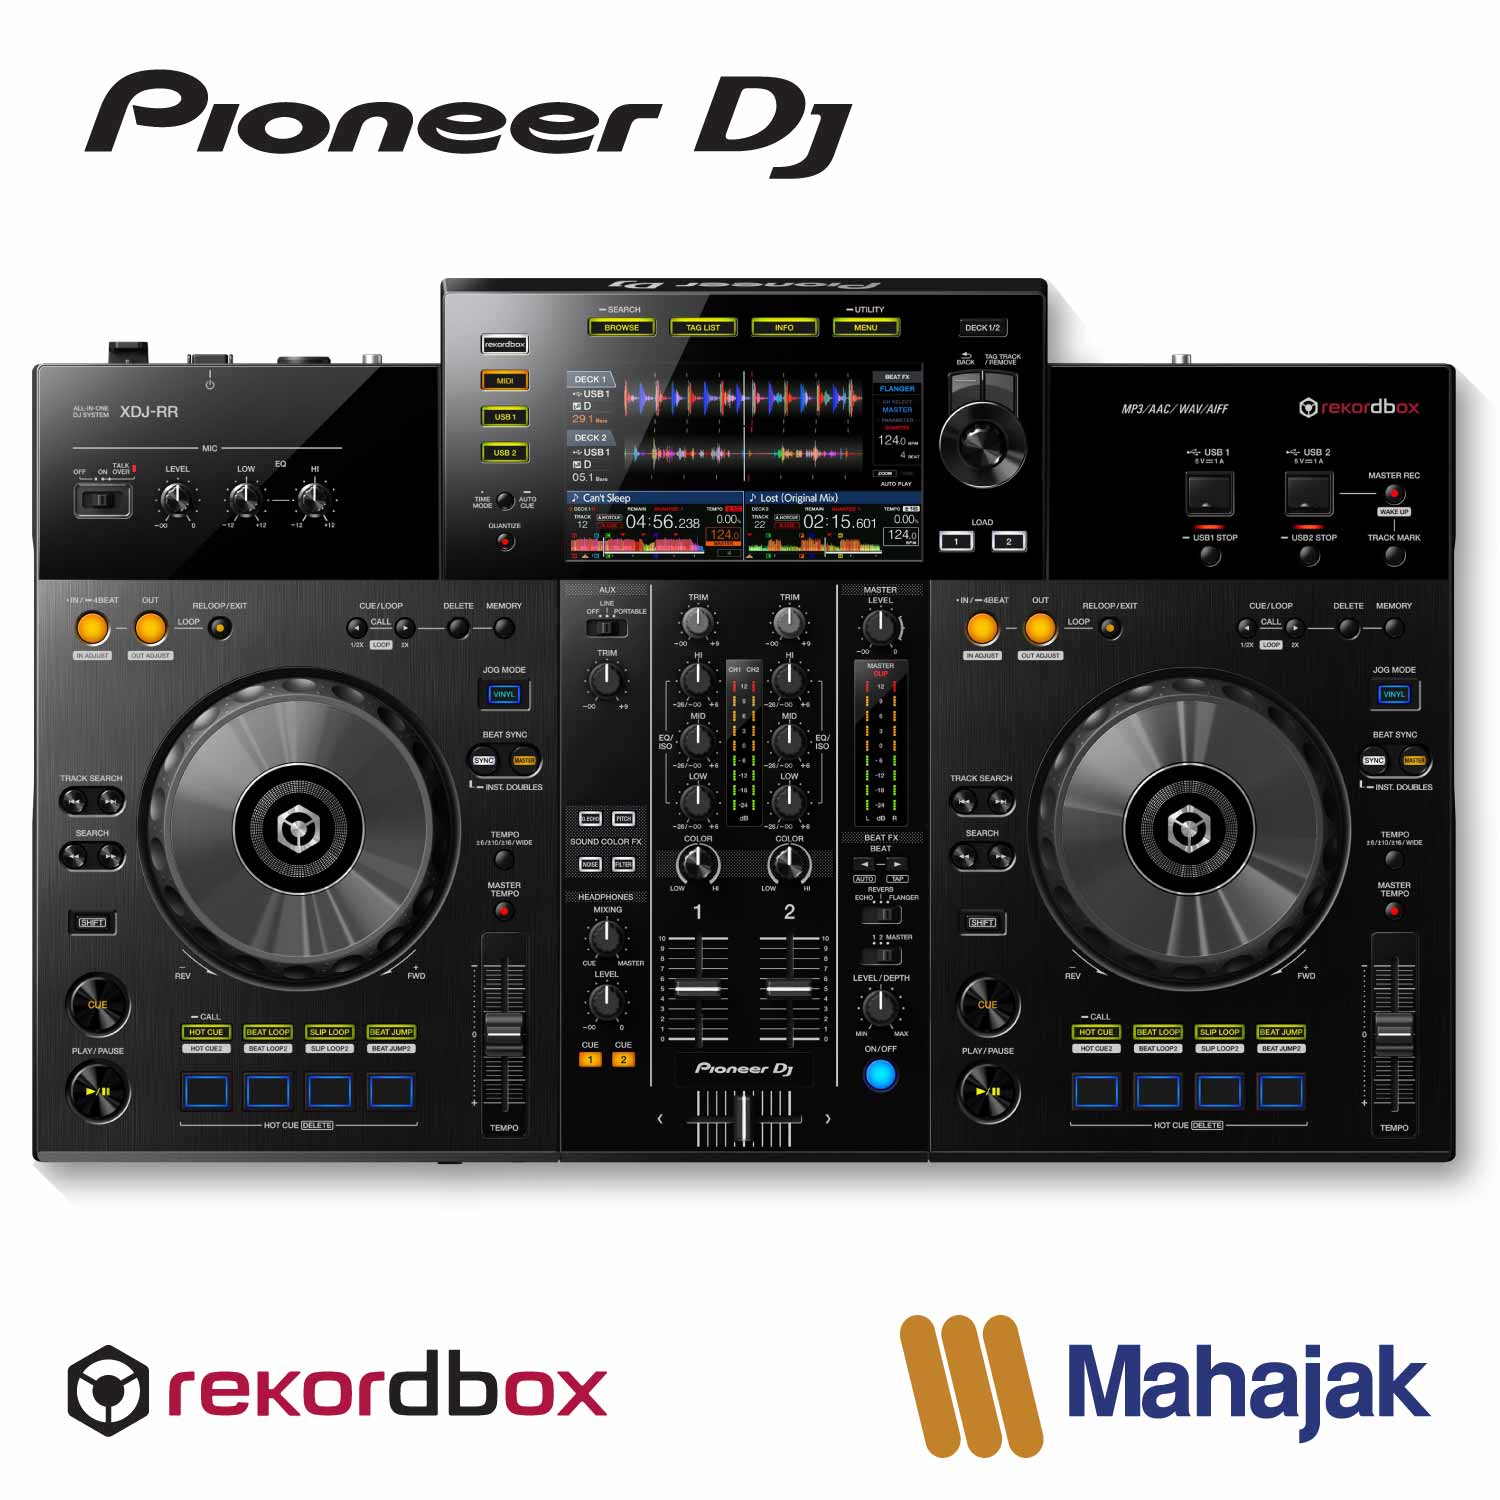 Pioneer DJ XDJ-RR | All-in-one DJ system for rekordbox